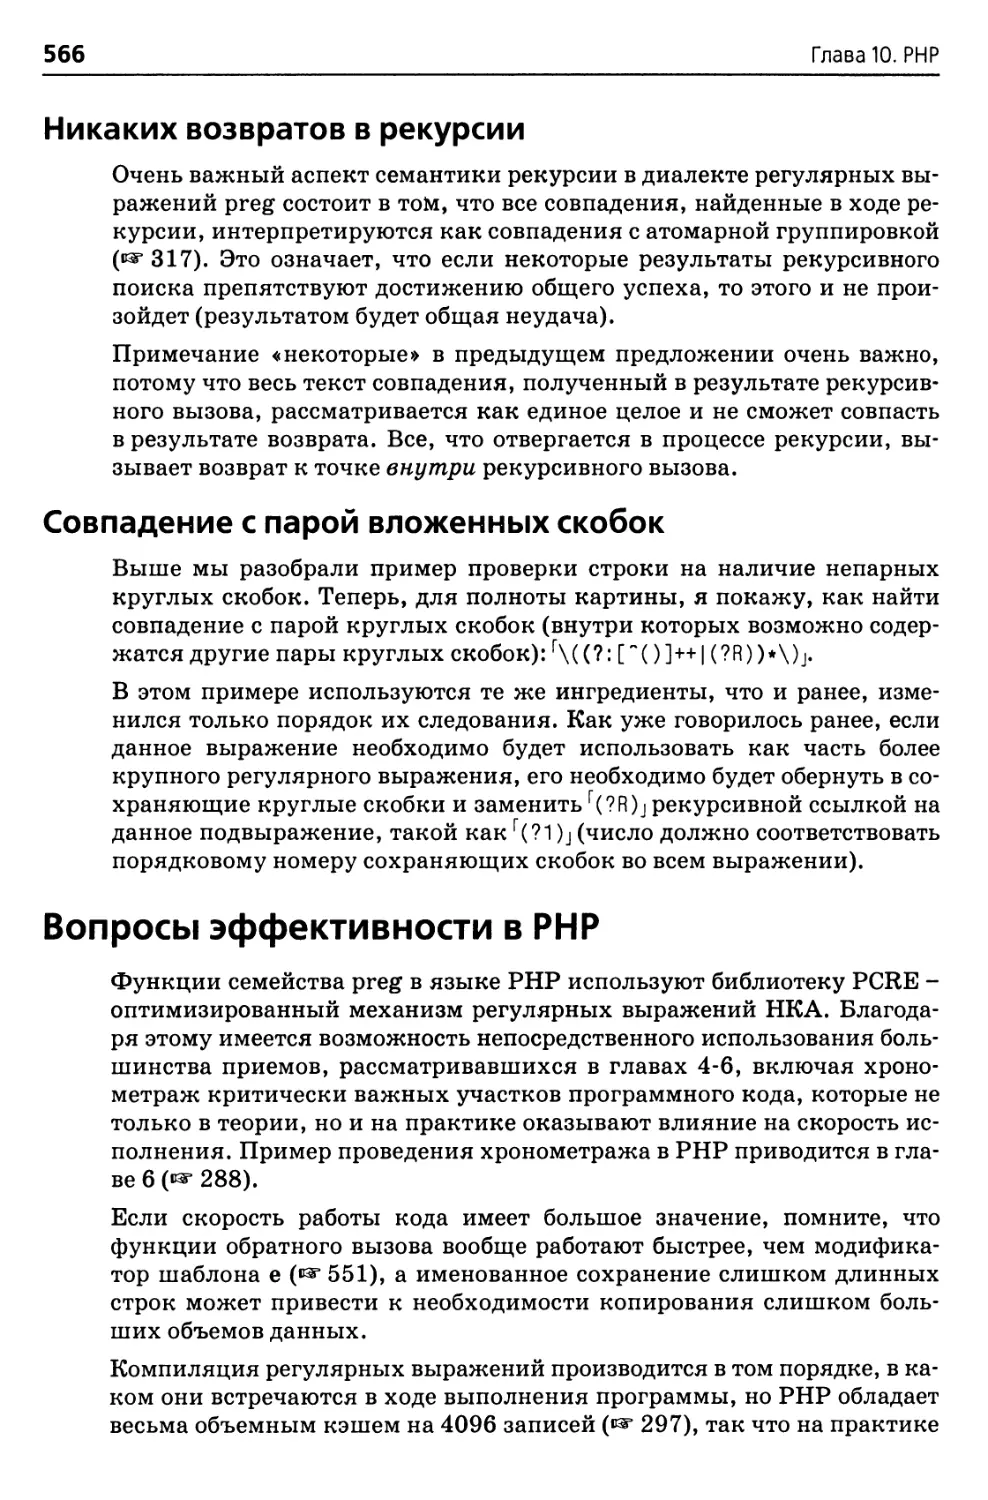 Никаких возвратов в рекурсии
Совпадение с парой вложенных скобок
Вопросы эффективности в РНР